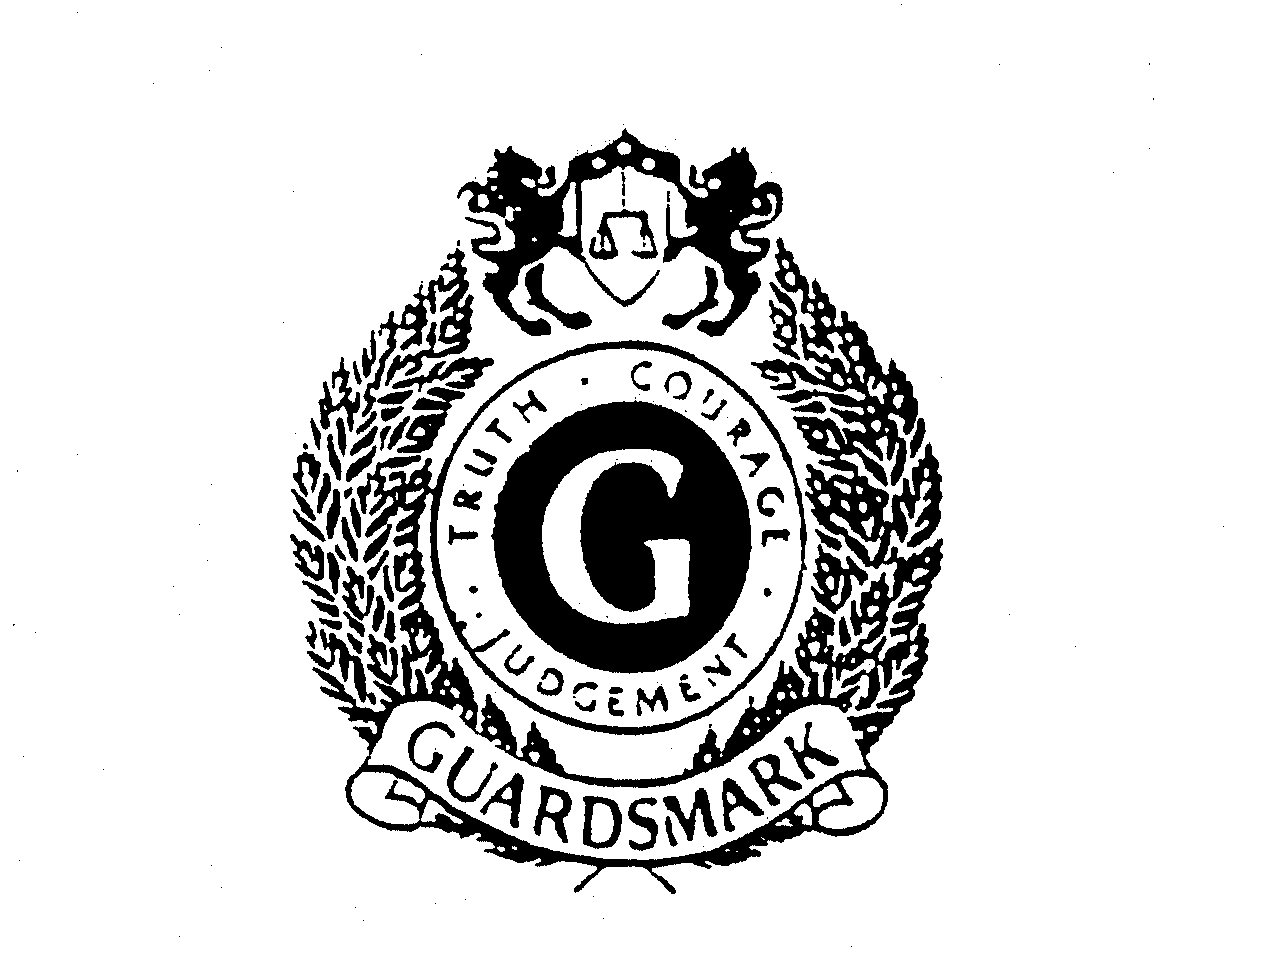 Trademark Logo G GUARDSMARK TRUTH COURAGE JUDGEMENT